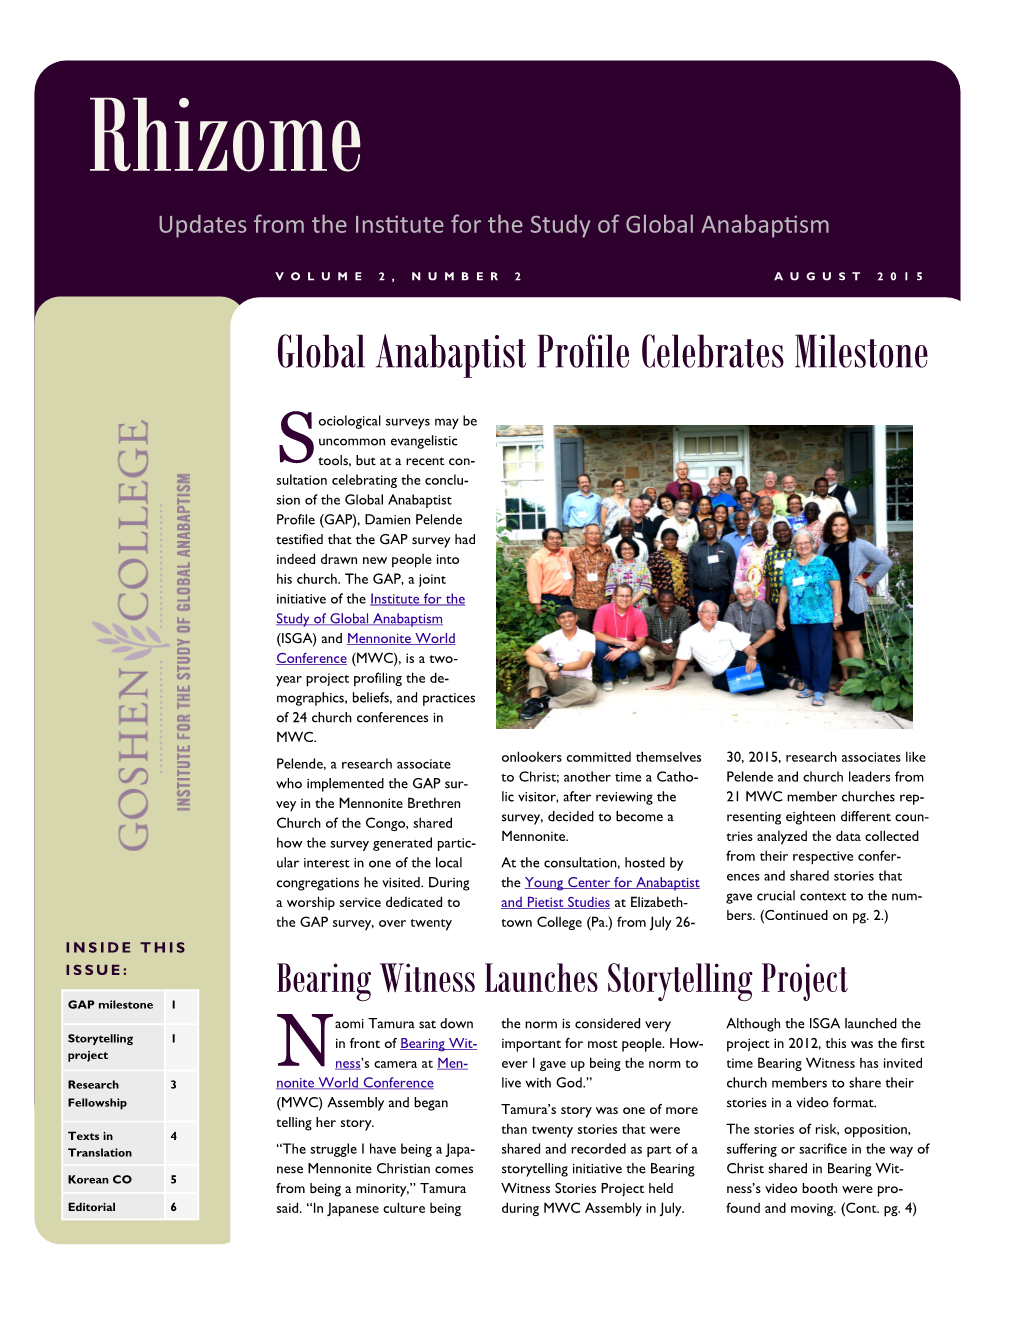 Global Anabaptist Profile Celebrates Milestone